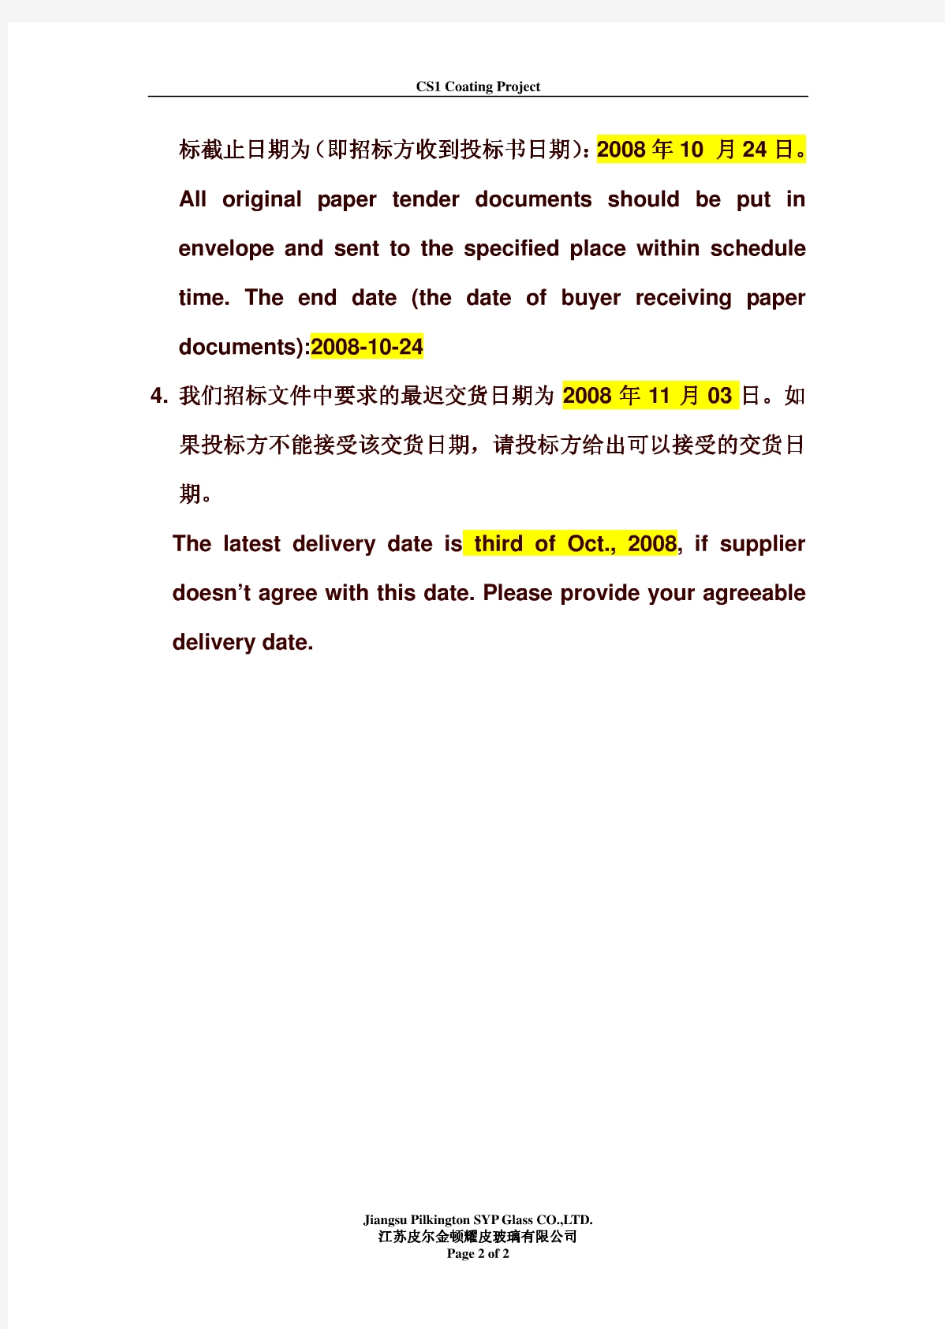 中文英文对照完整的大型工程招标文件及投标书实例(全套)-5821db1aff00bed5b9f31dff